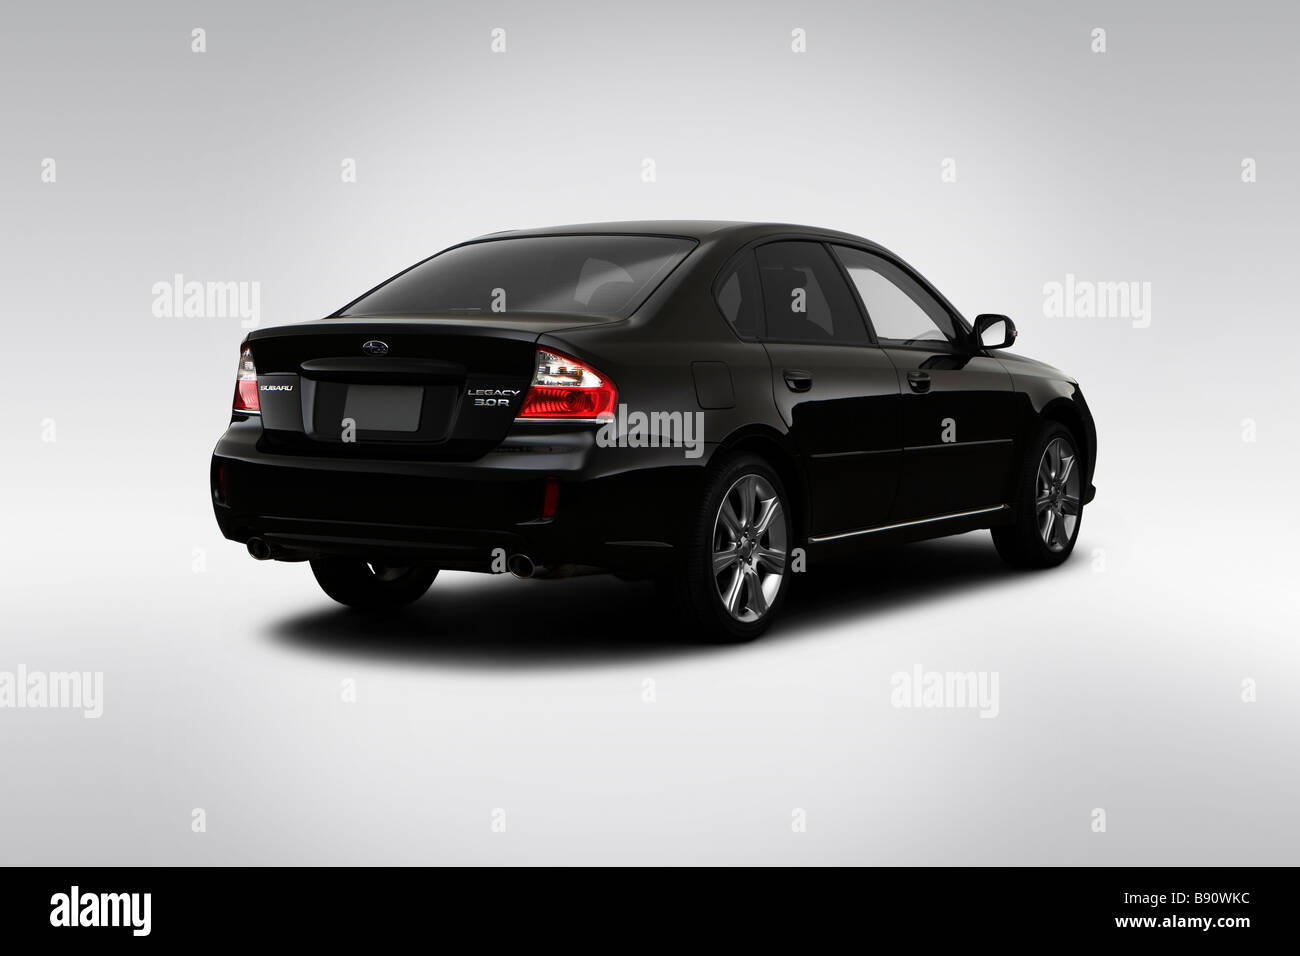 2009 begrenzt Subaru Legacy 3.0 R in schwarz - Winkel Rückansicht Stockfoto